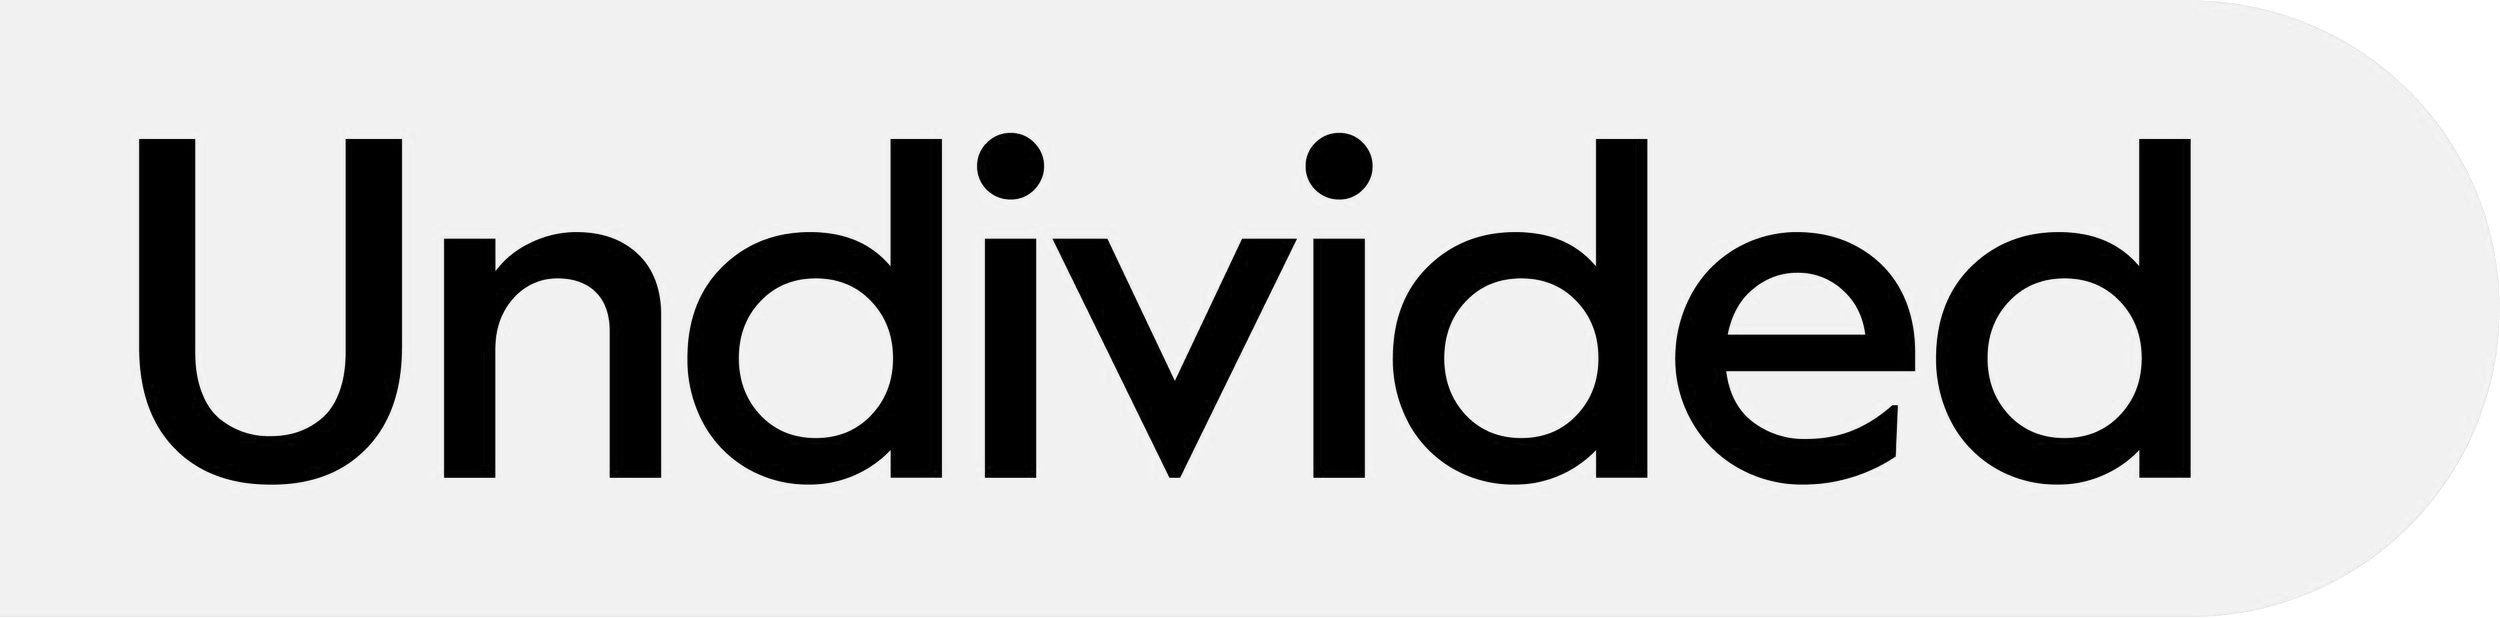 02-Undivided-Logo-HiRes.jpg